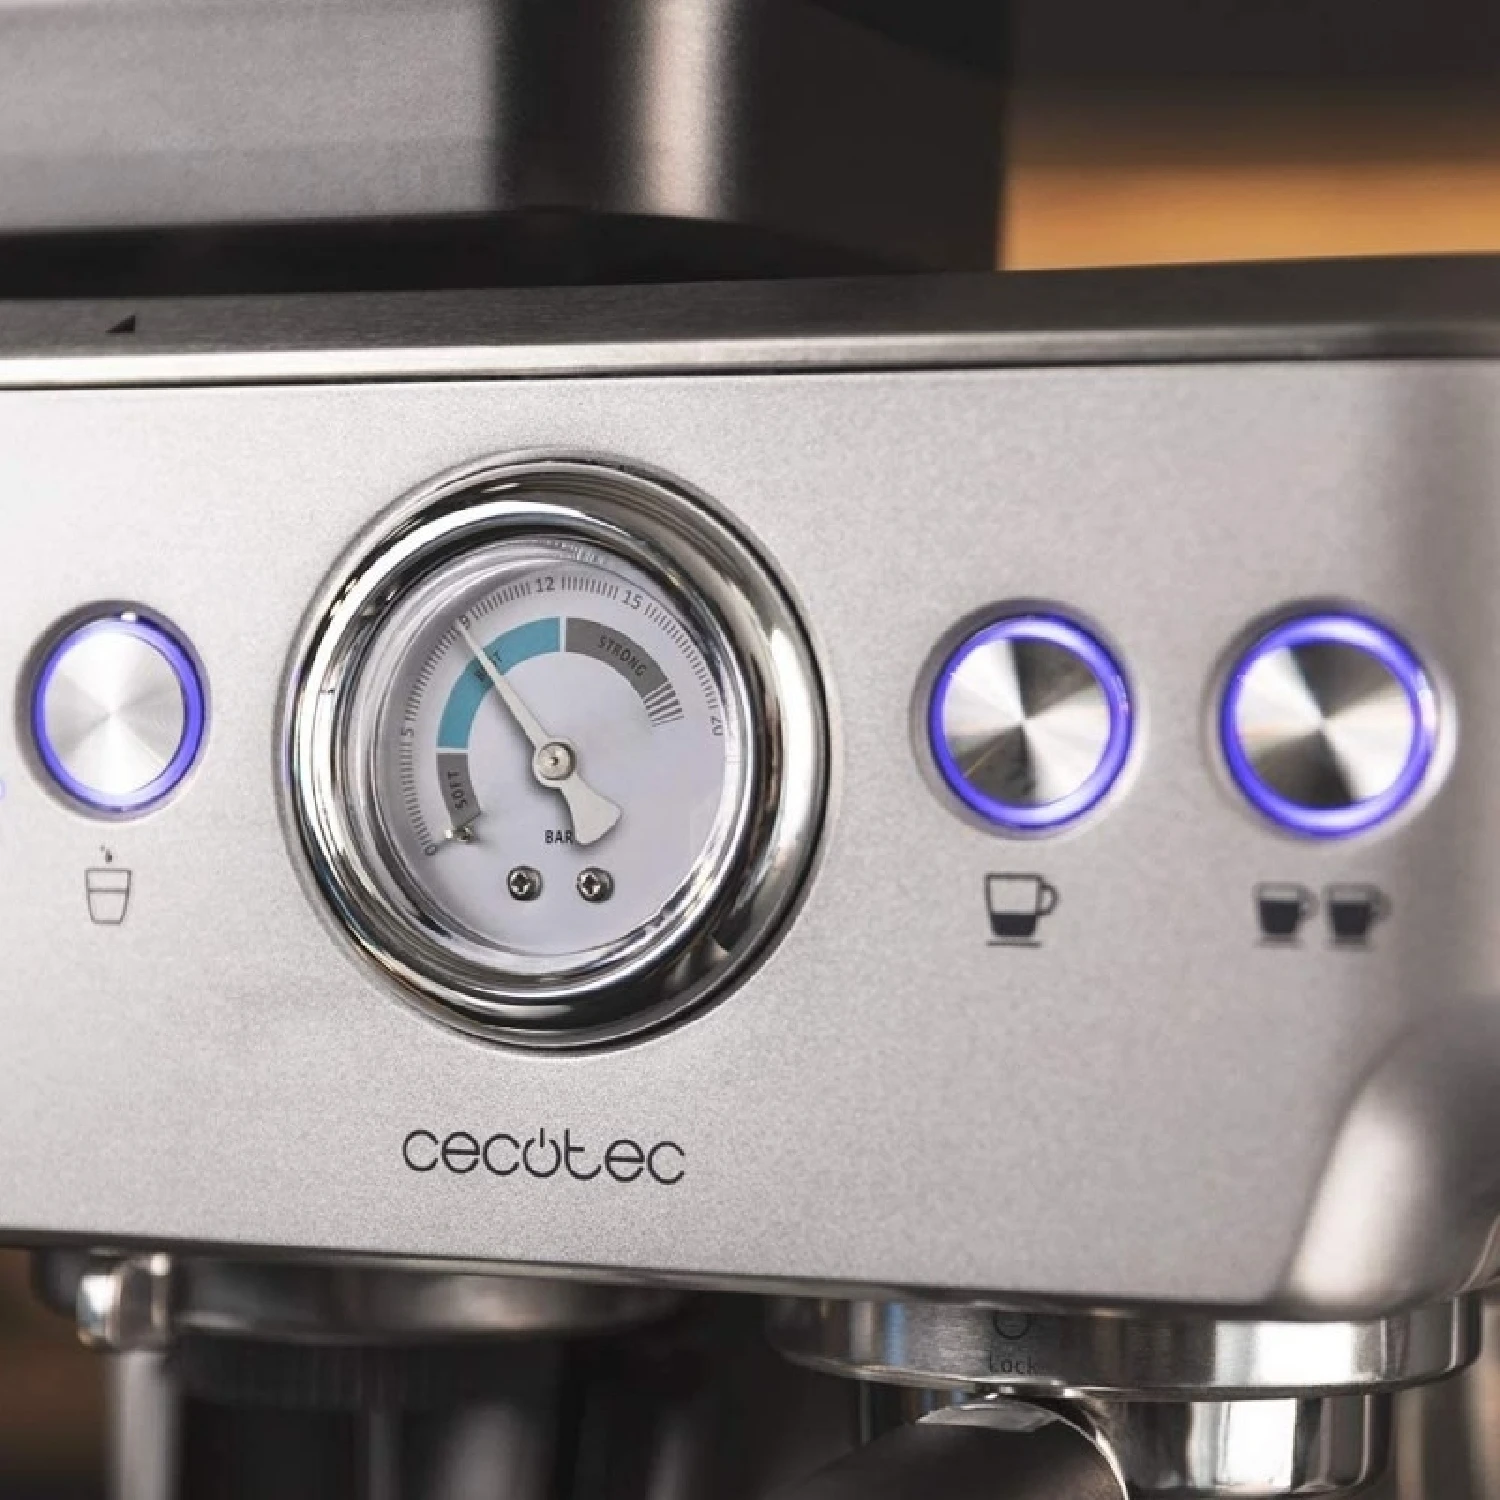 Power Espresso 20 Barista Compact Cafetera barista Cecotec